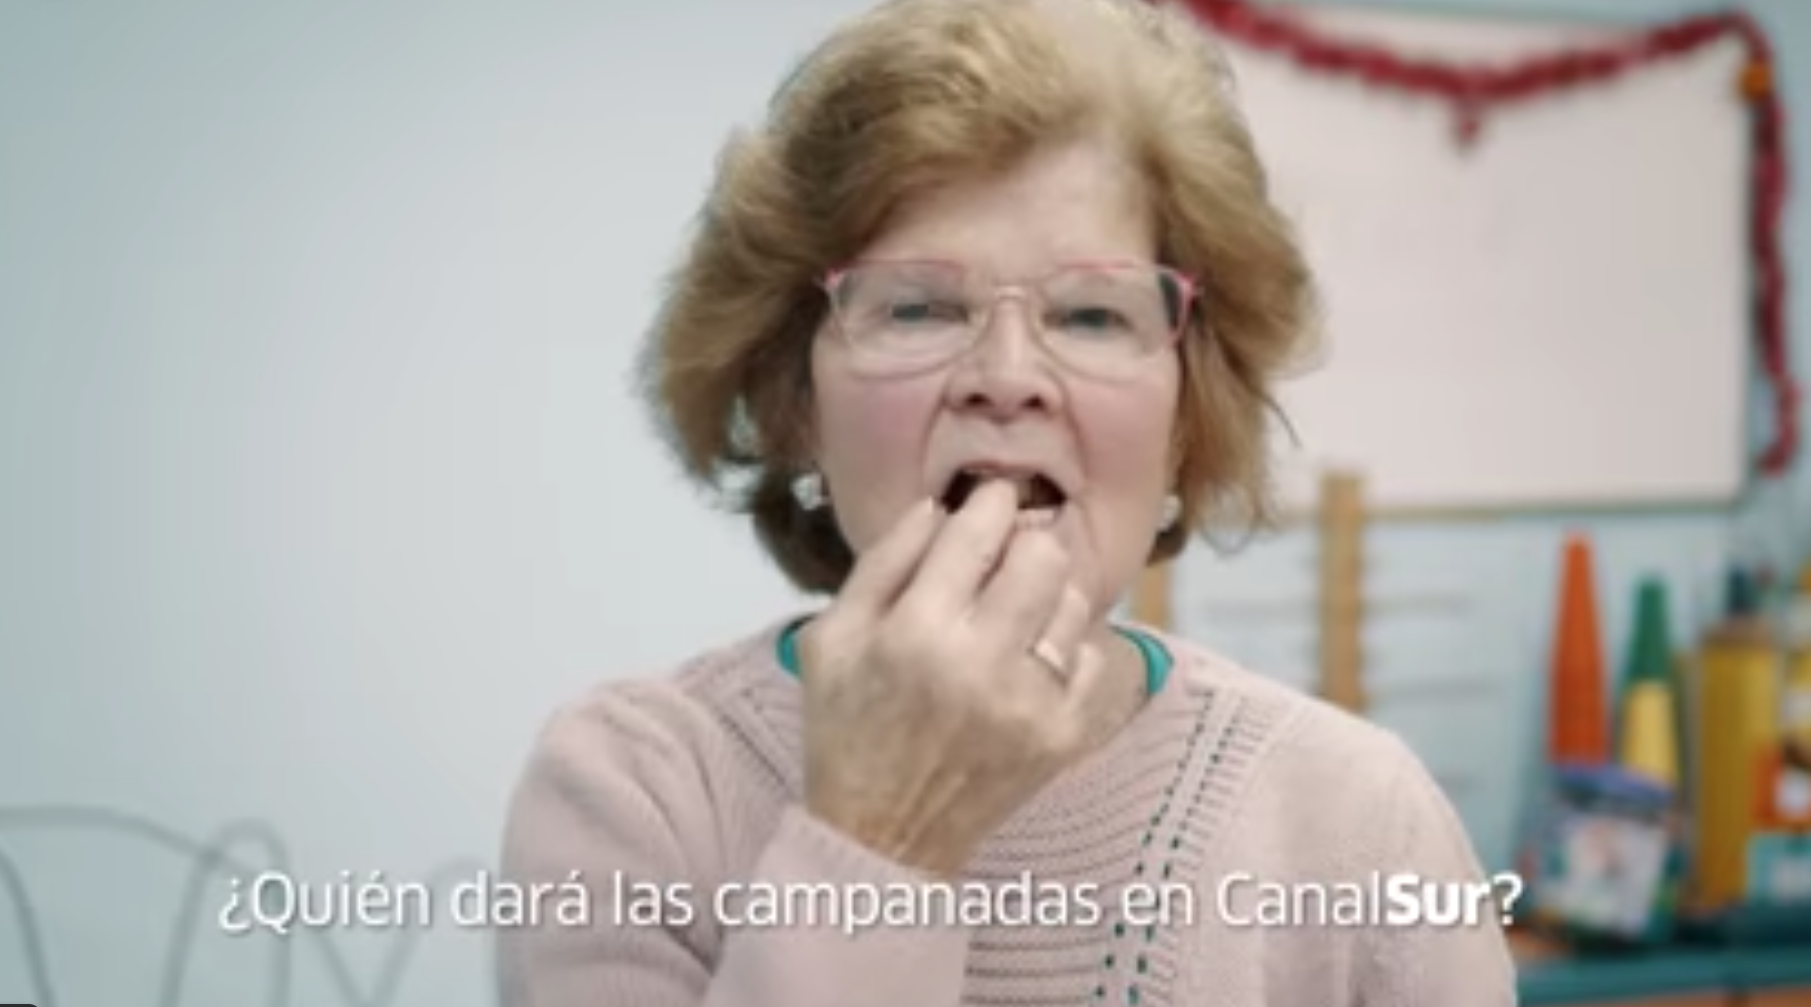 Una persona mayor, en un vídeo promocional de Canal Sur sobre las campanadas.